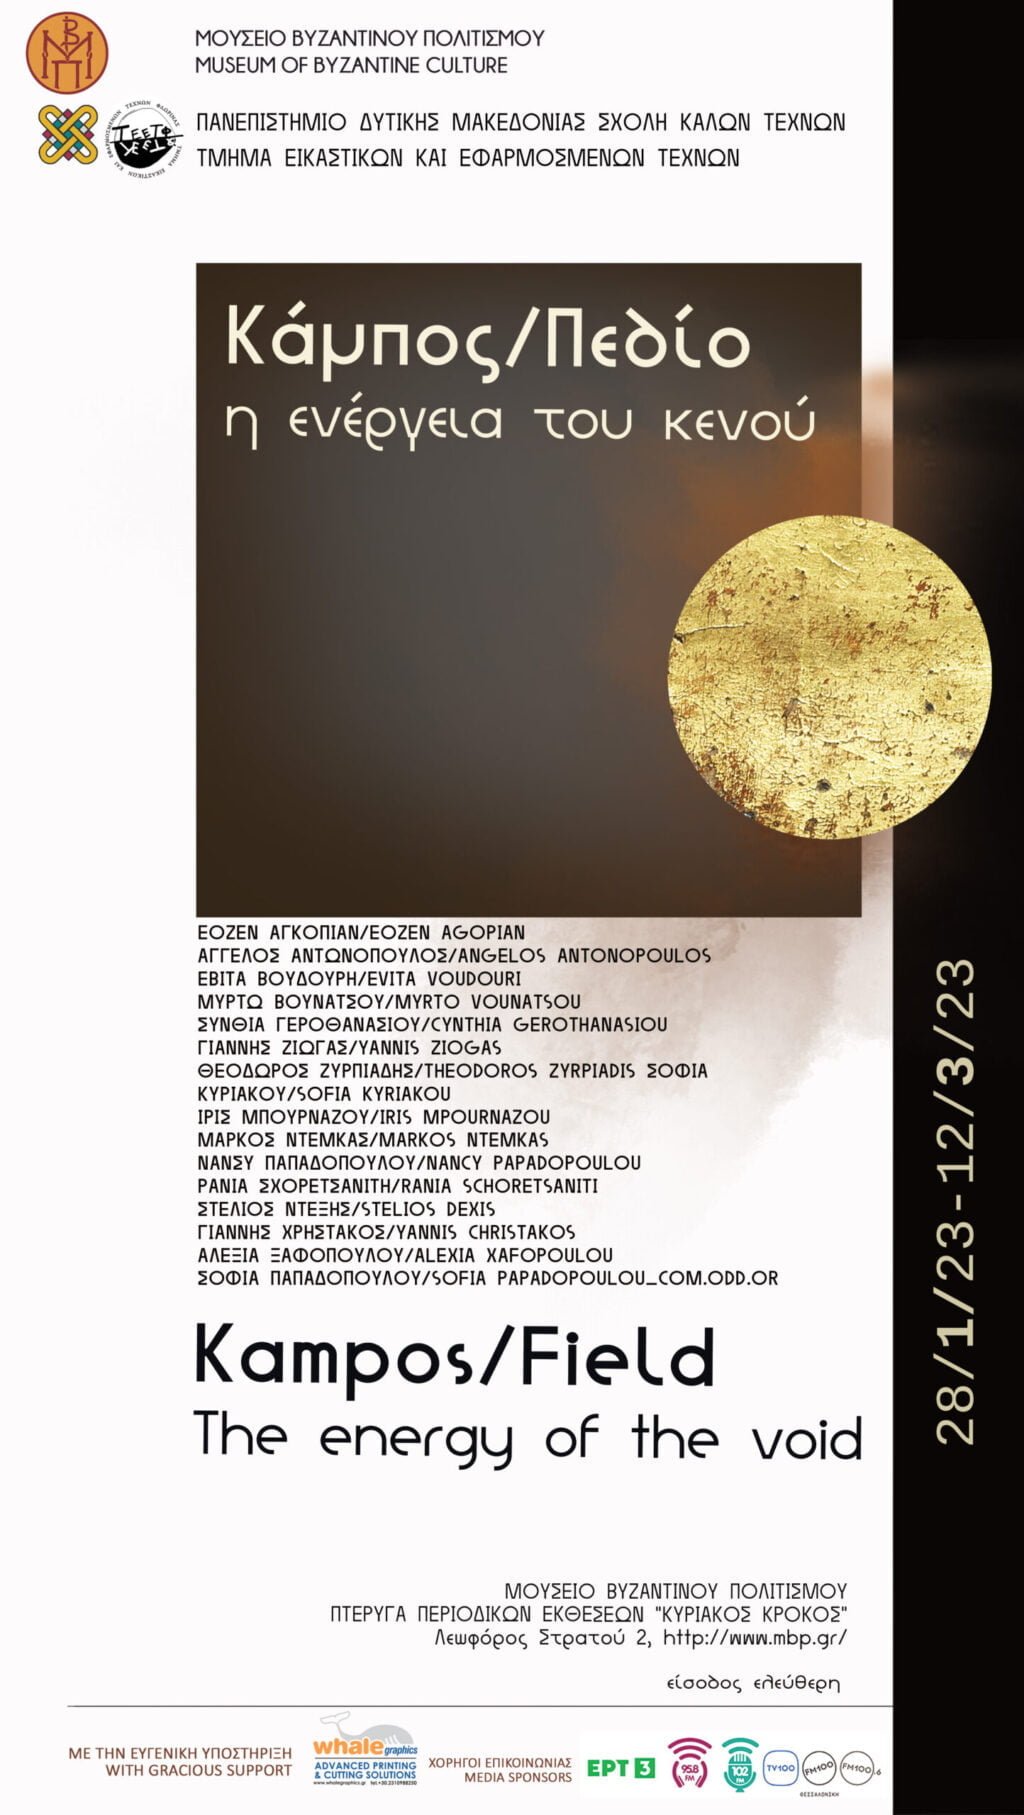 Τμήμα Εικαστικών και Εφαρμοσμένων Τεχνών Πανεπιστημίου Δυτικής Μακεδονίας| Εγκαίνια Έκθεσης Κόμπος/Πεδίο: η ενέργεια του κενού, στο Μουσείο Βυζαντινού Πολιτισμού Θεσσαλονίκης.